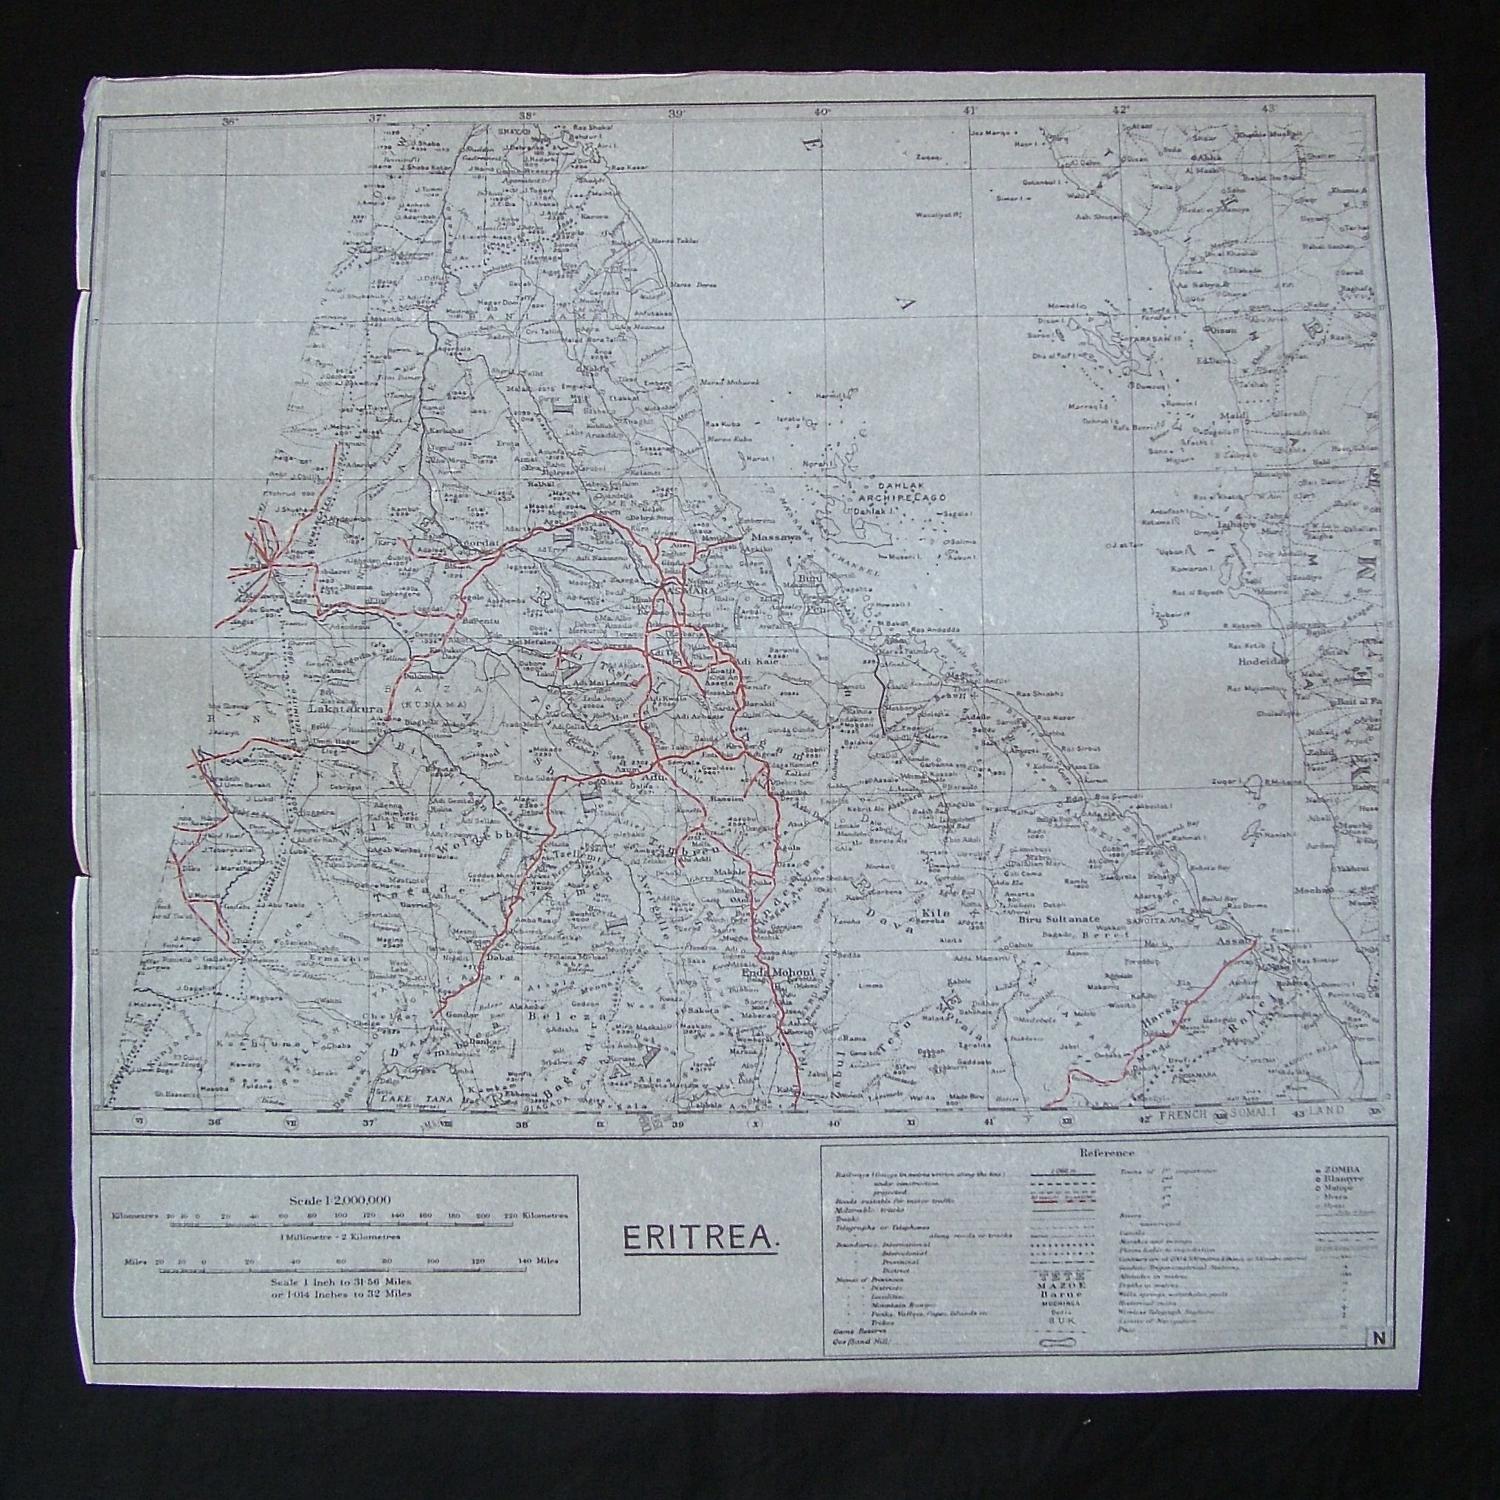 RAF tissue paper escape map - Eritrea